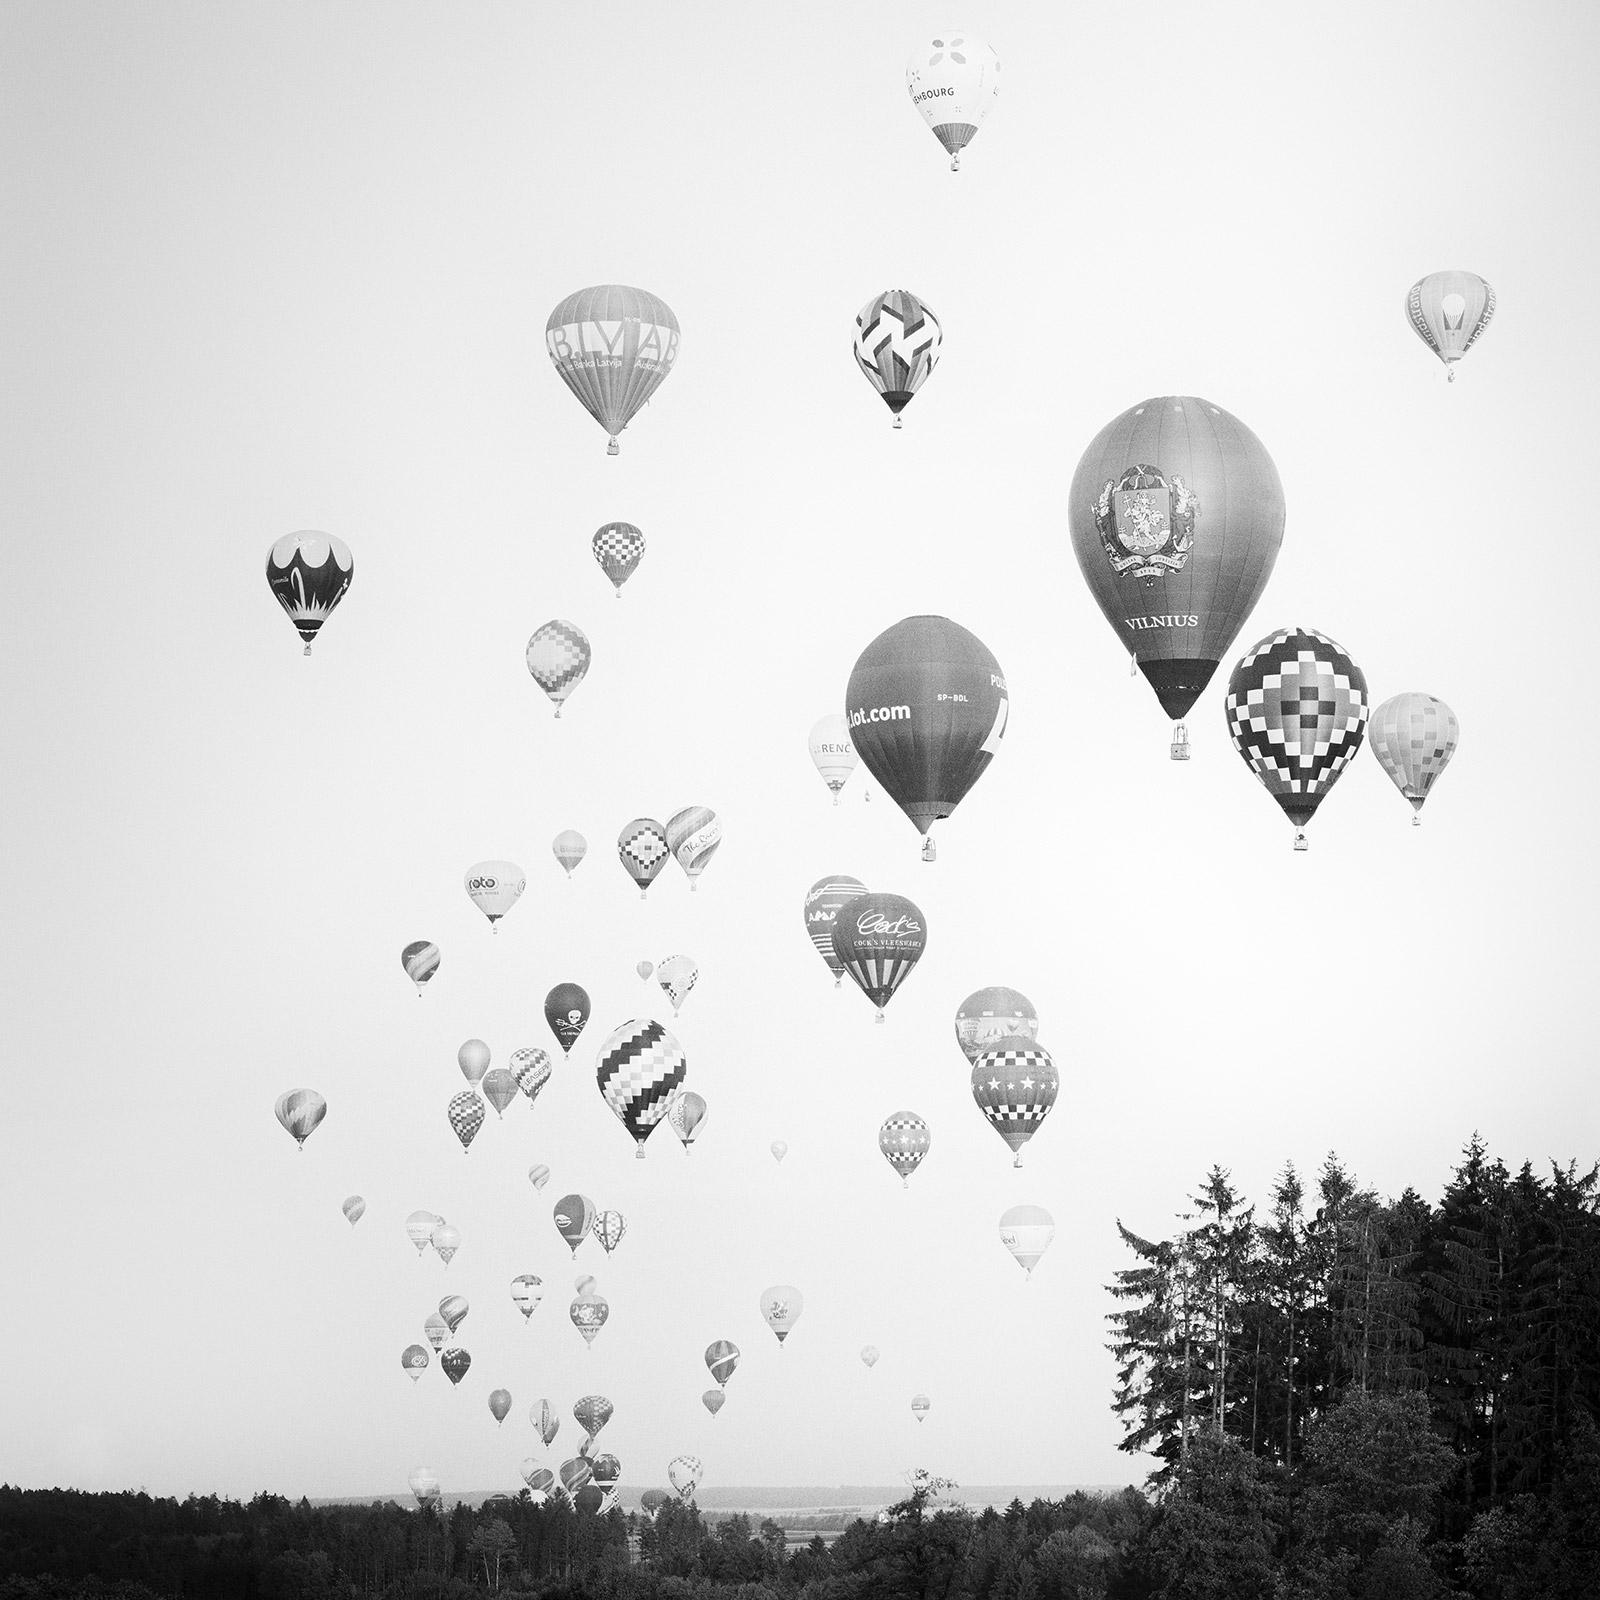 Black and White Photograph Gerald Berghammer - Tournoi mondial des ballons d'aviation, photographies de paysages en noir et blanc